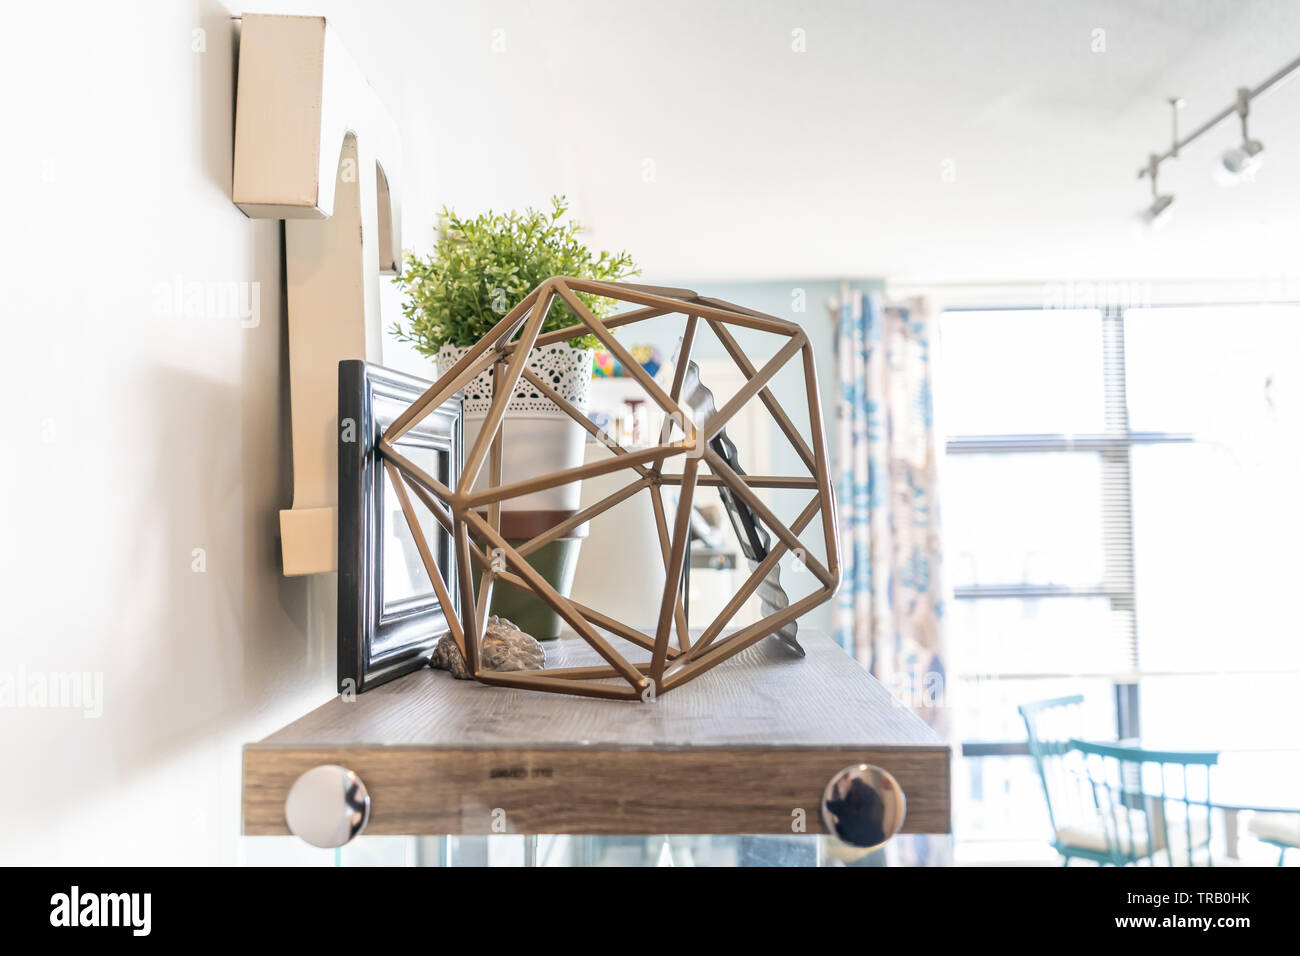 Home Wandregal mit dekorativem Schnickschnack, einschließlich einer geometrischen Kabel Objekt, einen Buchstaben "t", Bilderrahmen und einer Pflanzmaschine. Helles Wohnzimmer Regal. Stockfoto